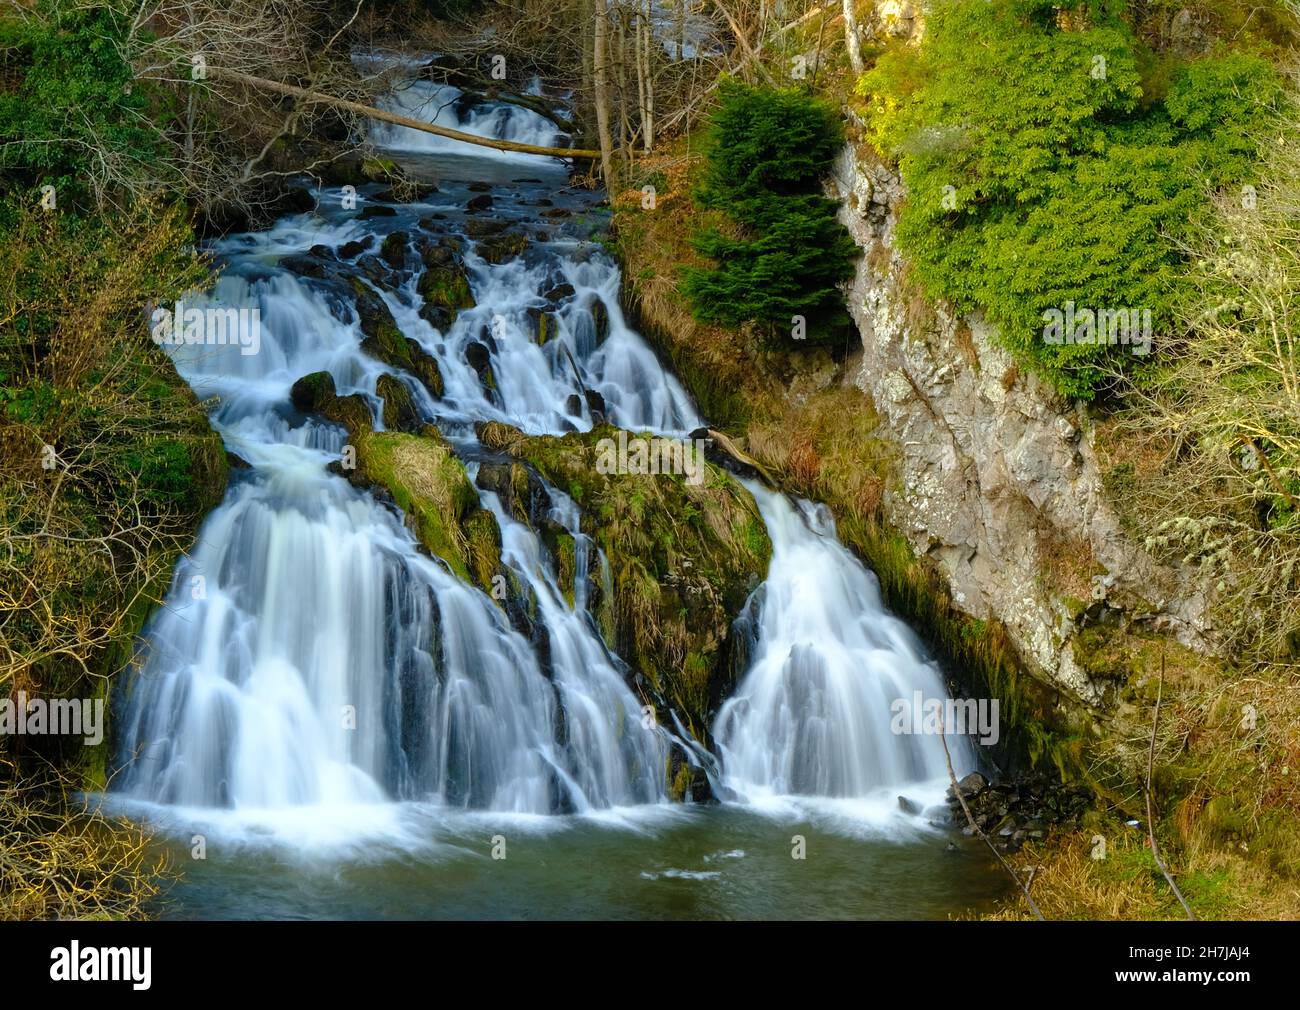 Ein Farbfoto der Wasserfälle von Dess, das sich in der Nähe des Dorfes Kincardine O' Neil, Aberdeenshire, Schottland, befindet und im Frühjahr aufgenommen wurde. Stockfoto